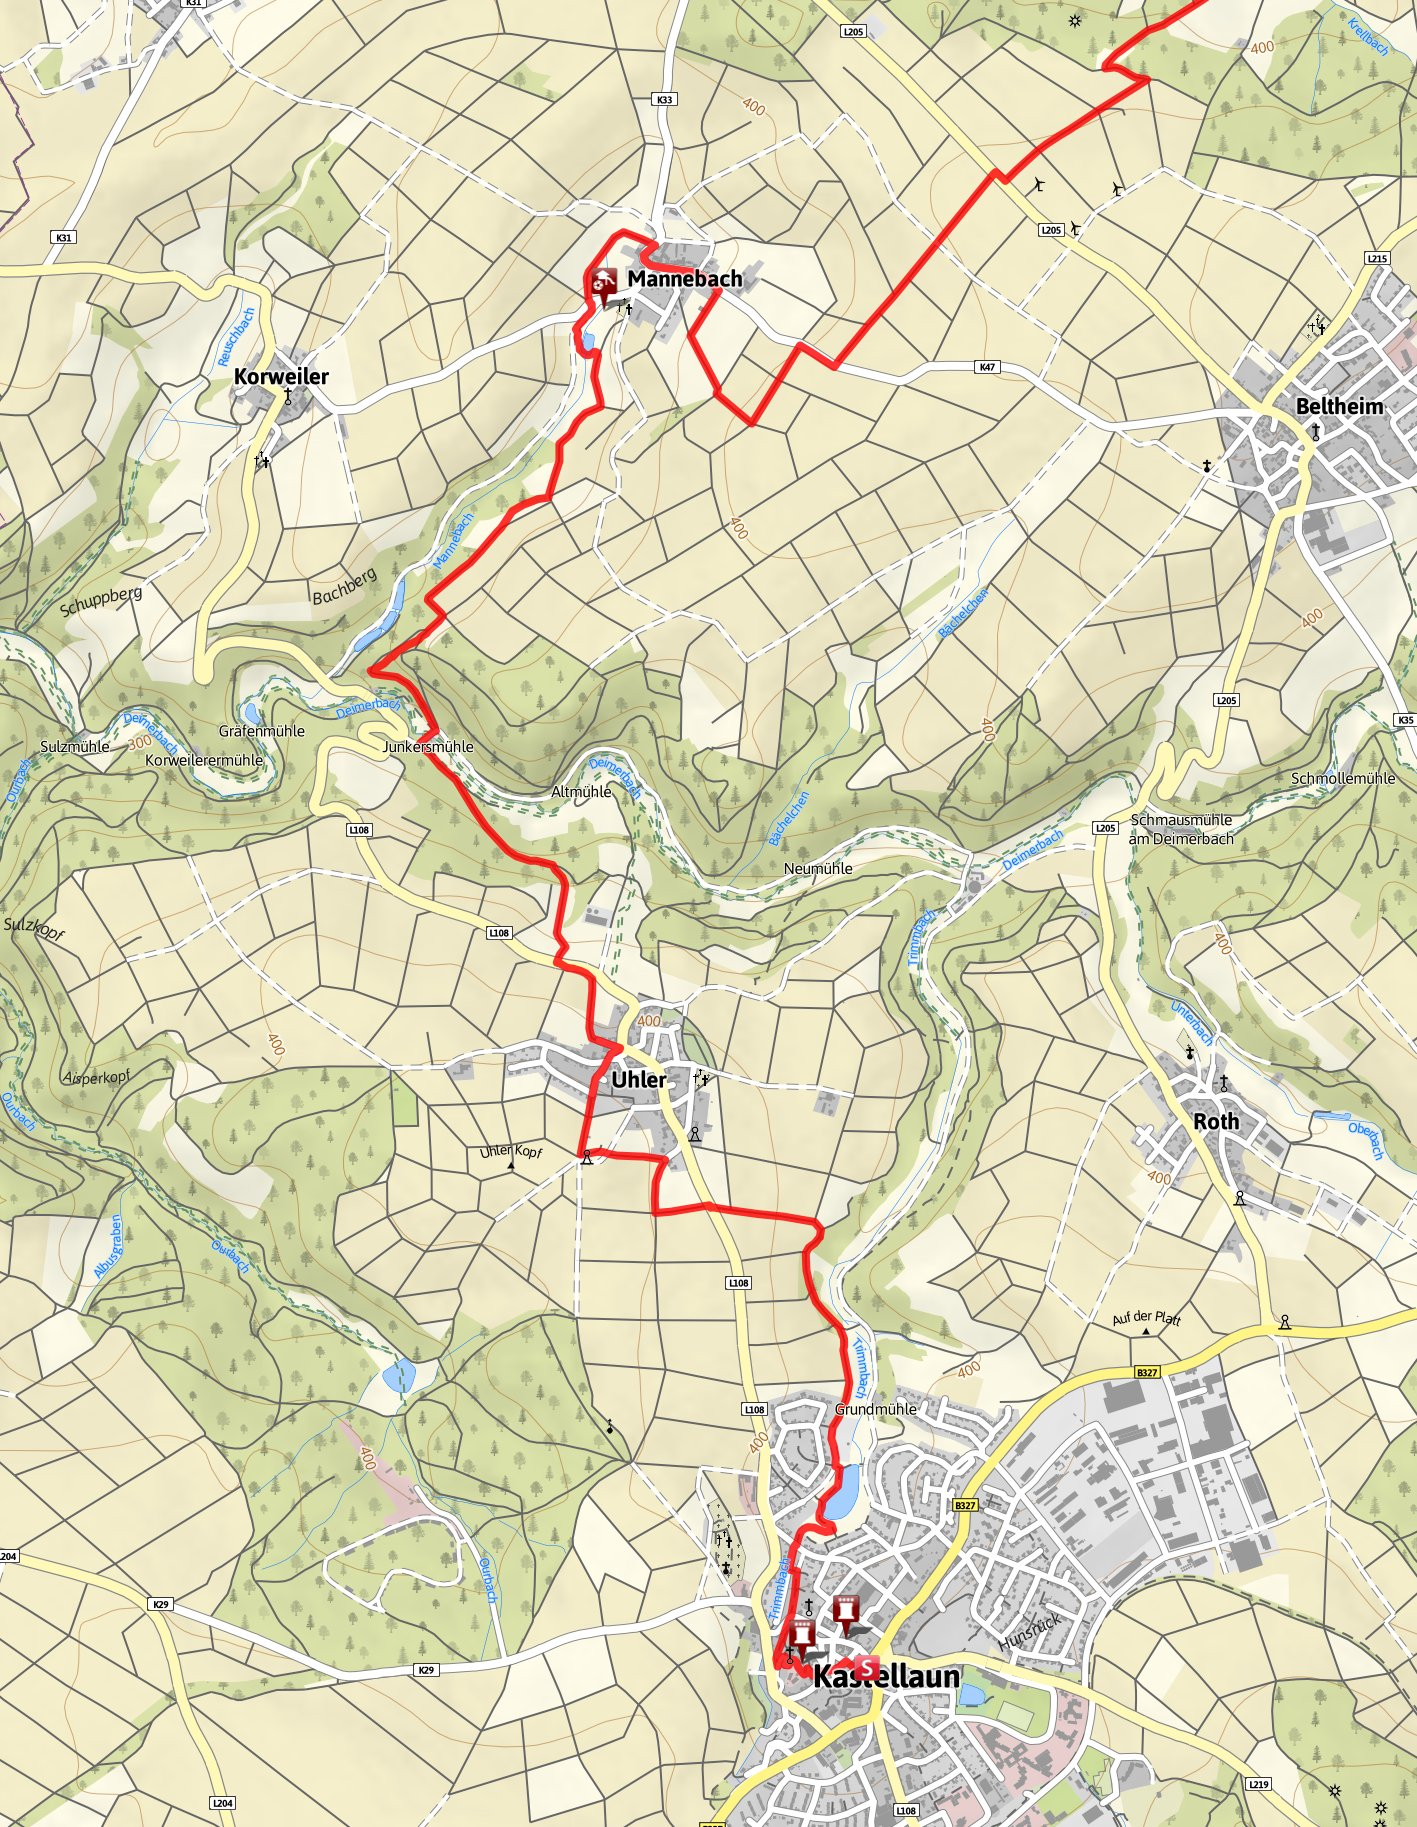 17.7 km 6:00 h 311 m 520 m Schwierigkeit schwer Kartengrundlagen: outdooractive Kartografie; Deutschland: GeoBasis-DE / BKG 2015, GeoBasis-DE / GEObasis.nrw 2015, Österreich: 1996-2015 here.